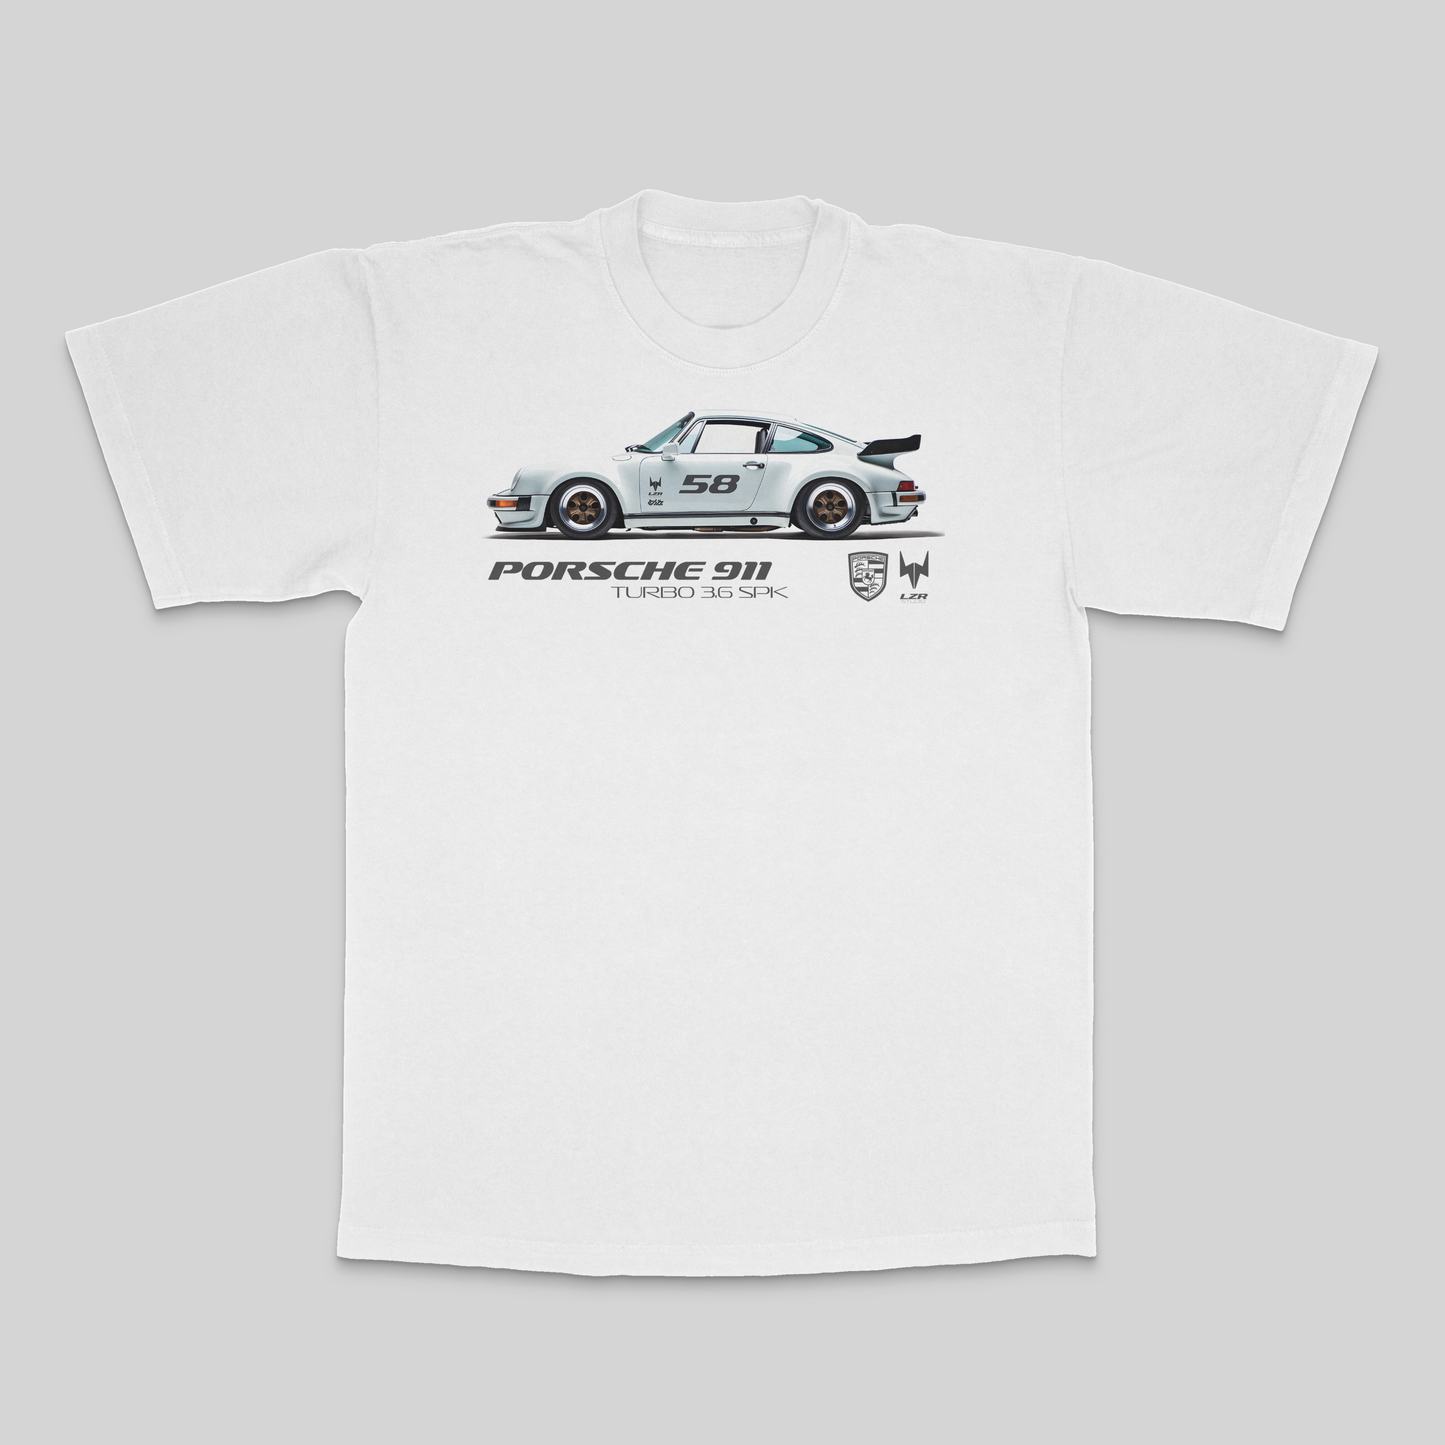 Porsche 911 Turbo 3.6 SPK T-Shirt - White